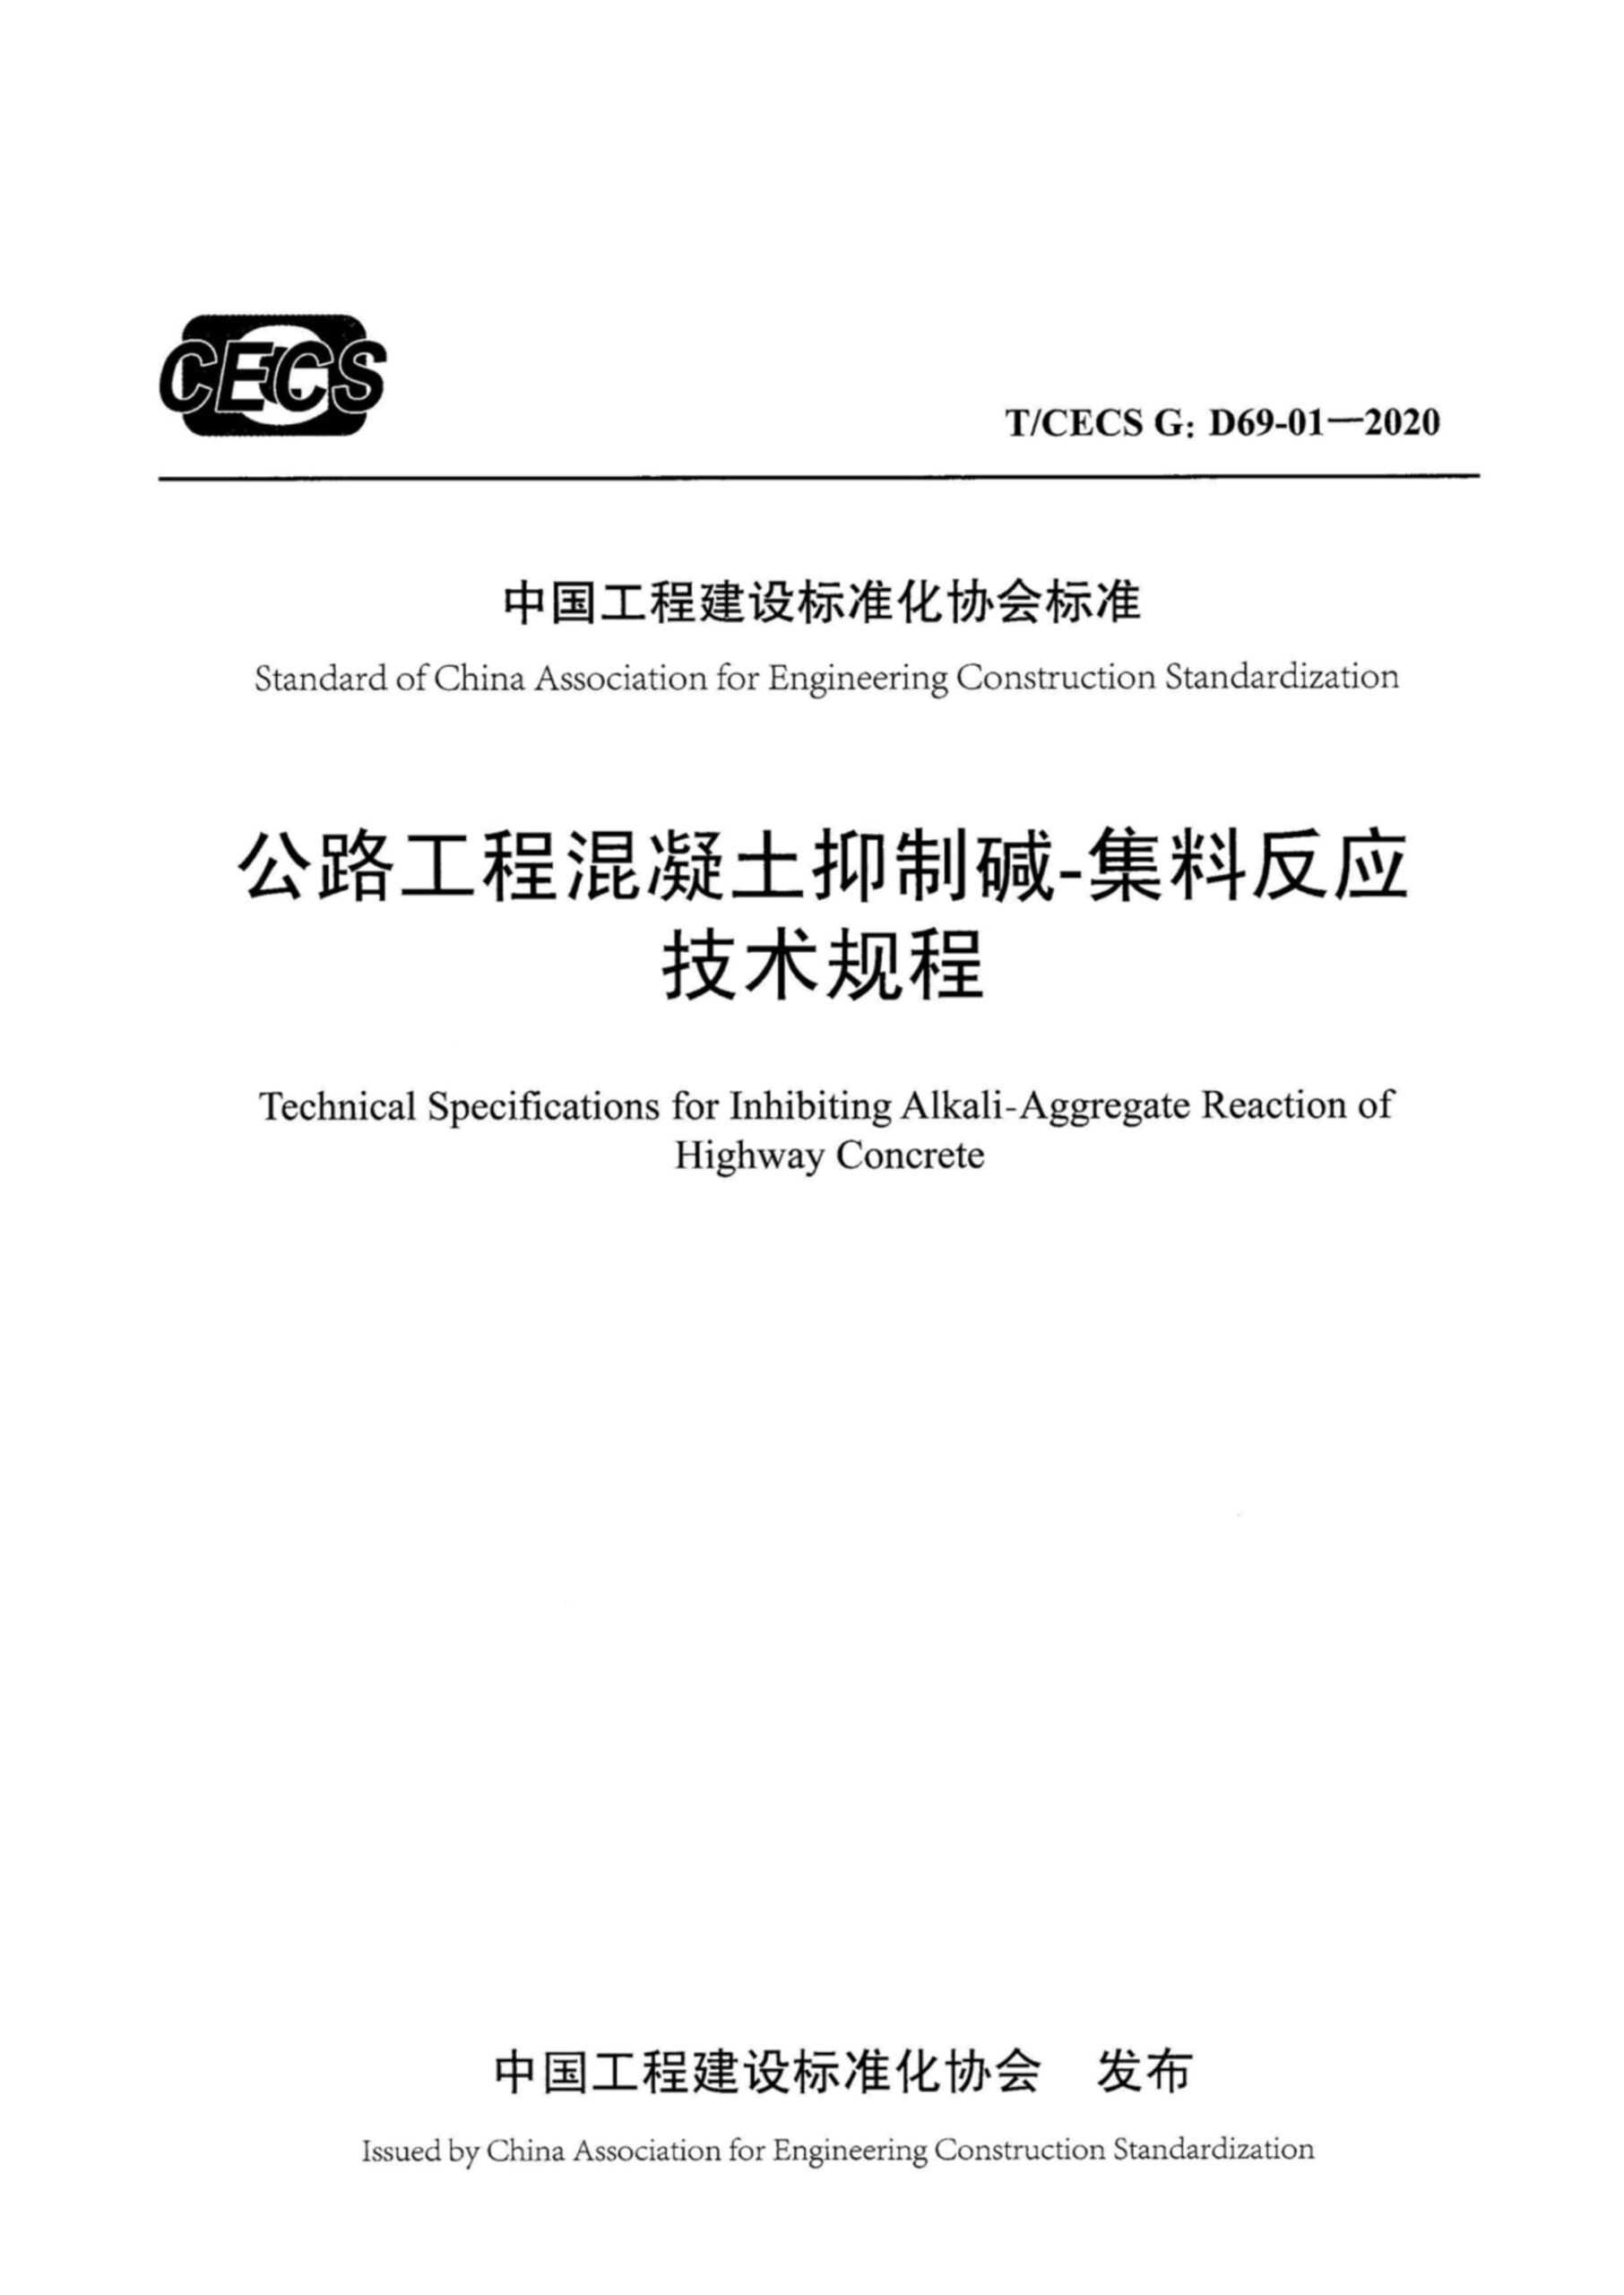 T/CECS G-D69-01-2020 公路工程混凝土抑制碱-集料反应技术规程